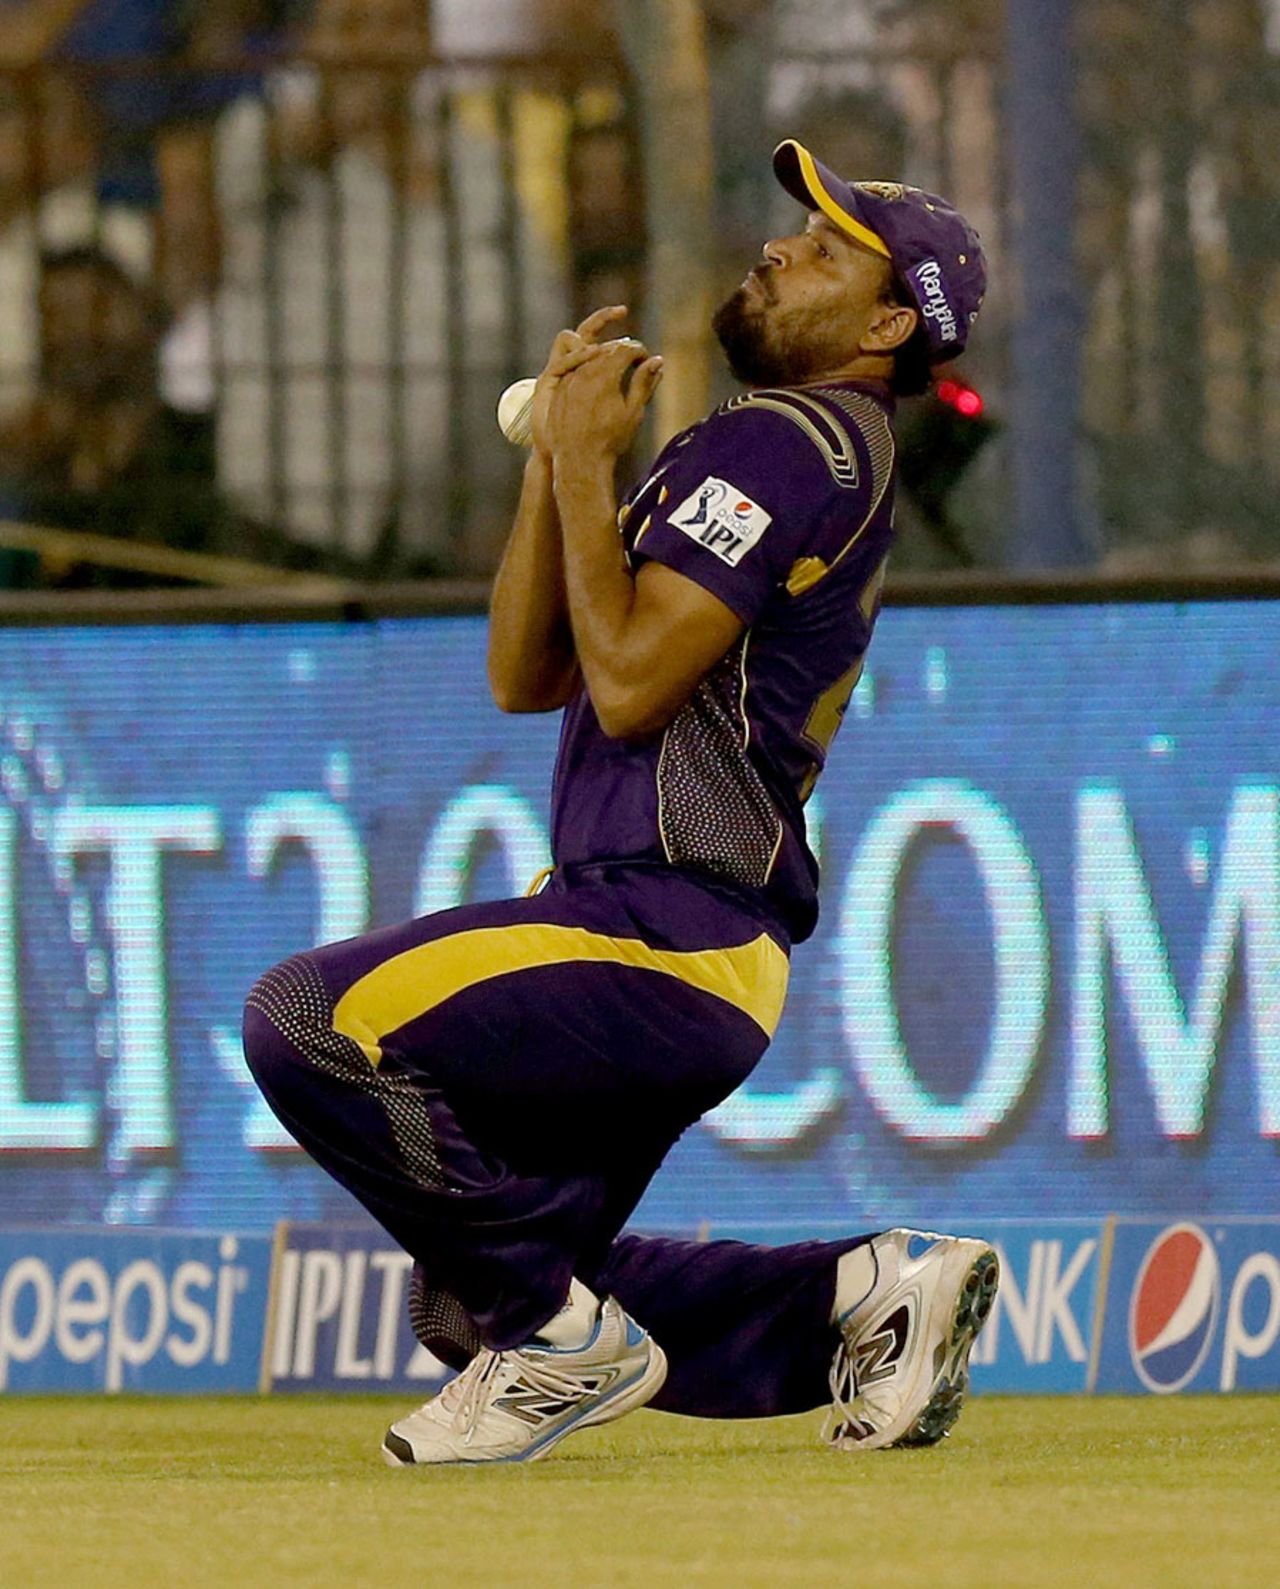 Yusuf Pathan fluffs a catch, Kolkata Knight Riders v Mumbai Indians, IPL 2014, Cuttack, May 14, 2014